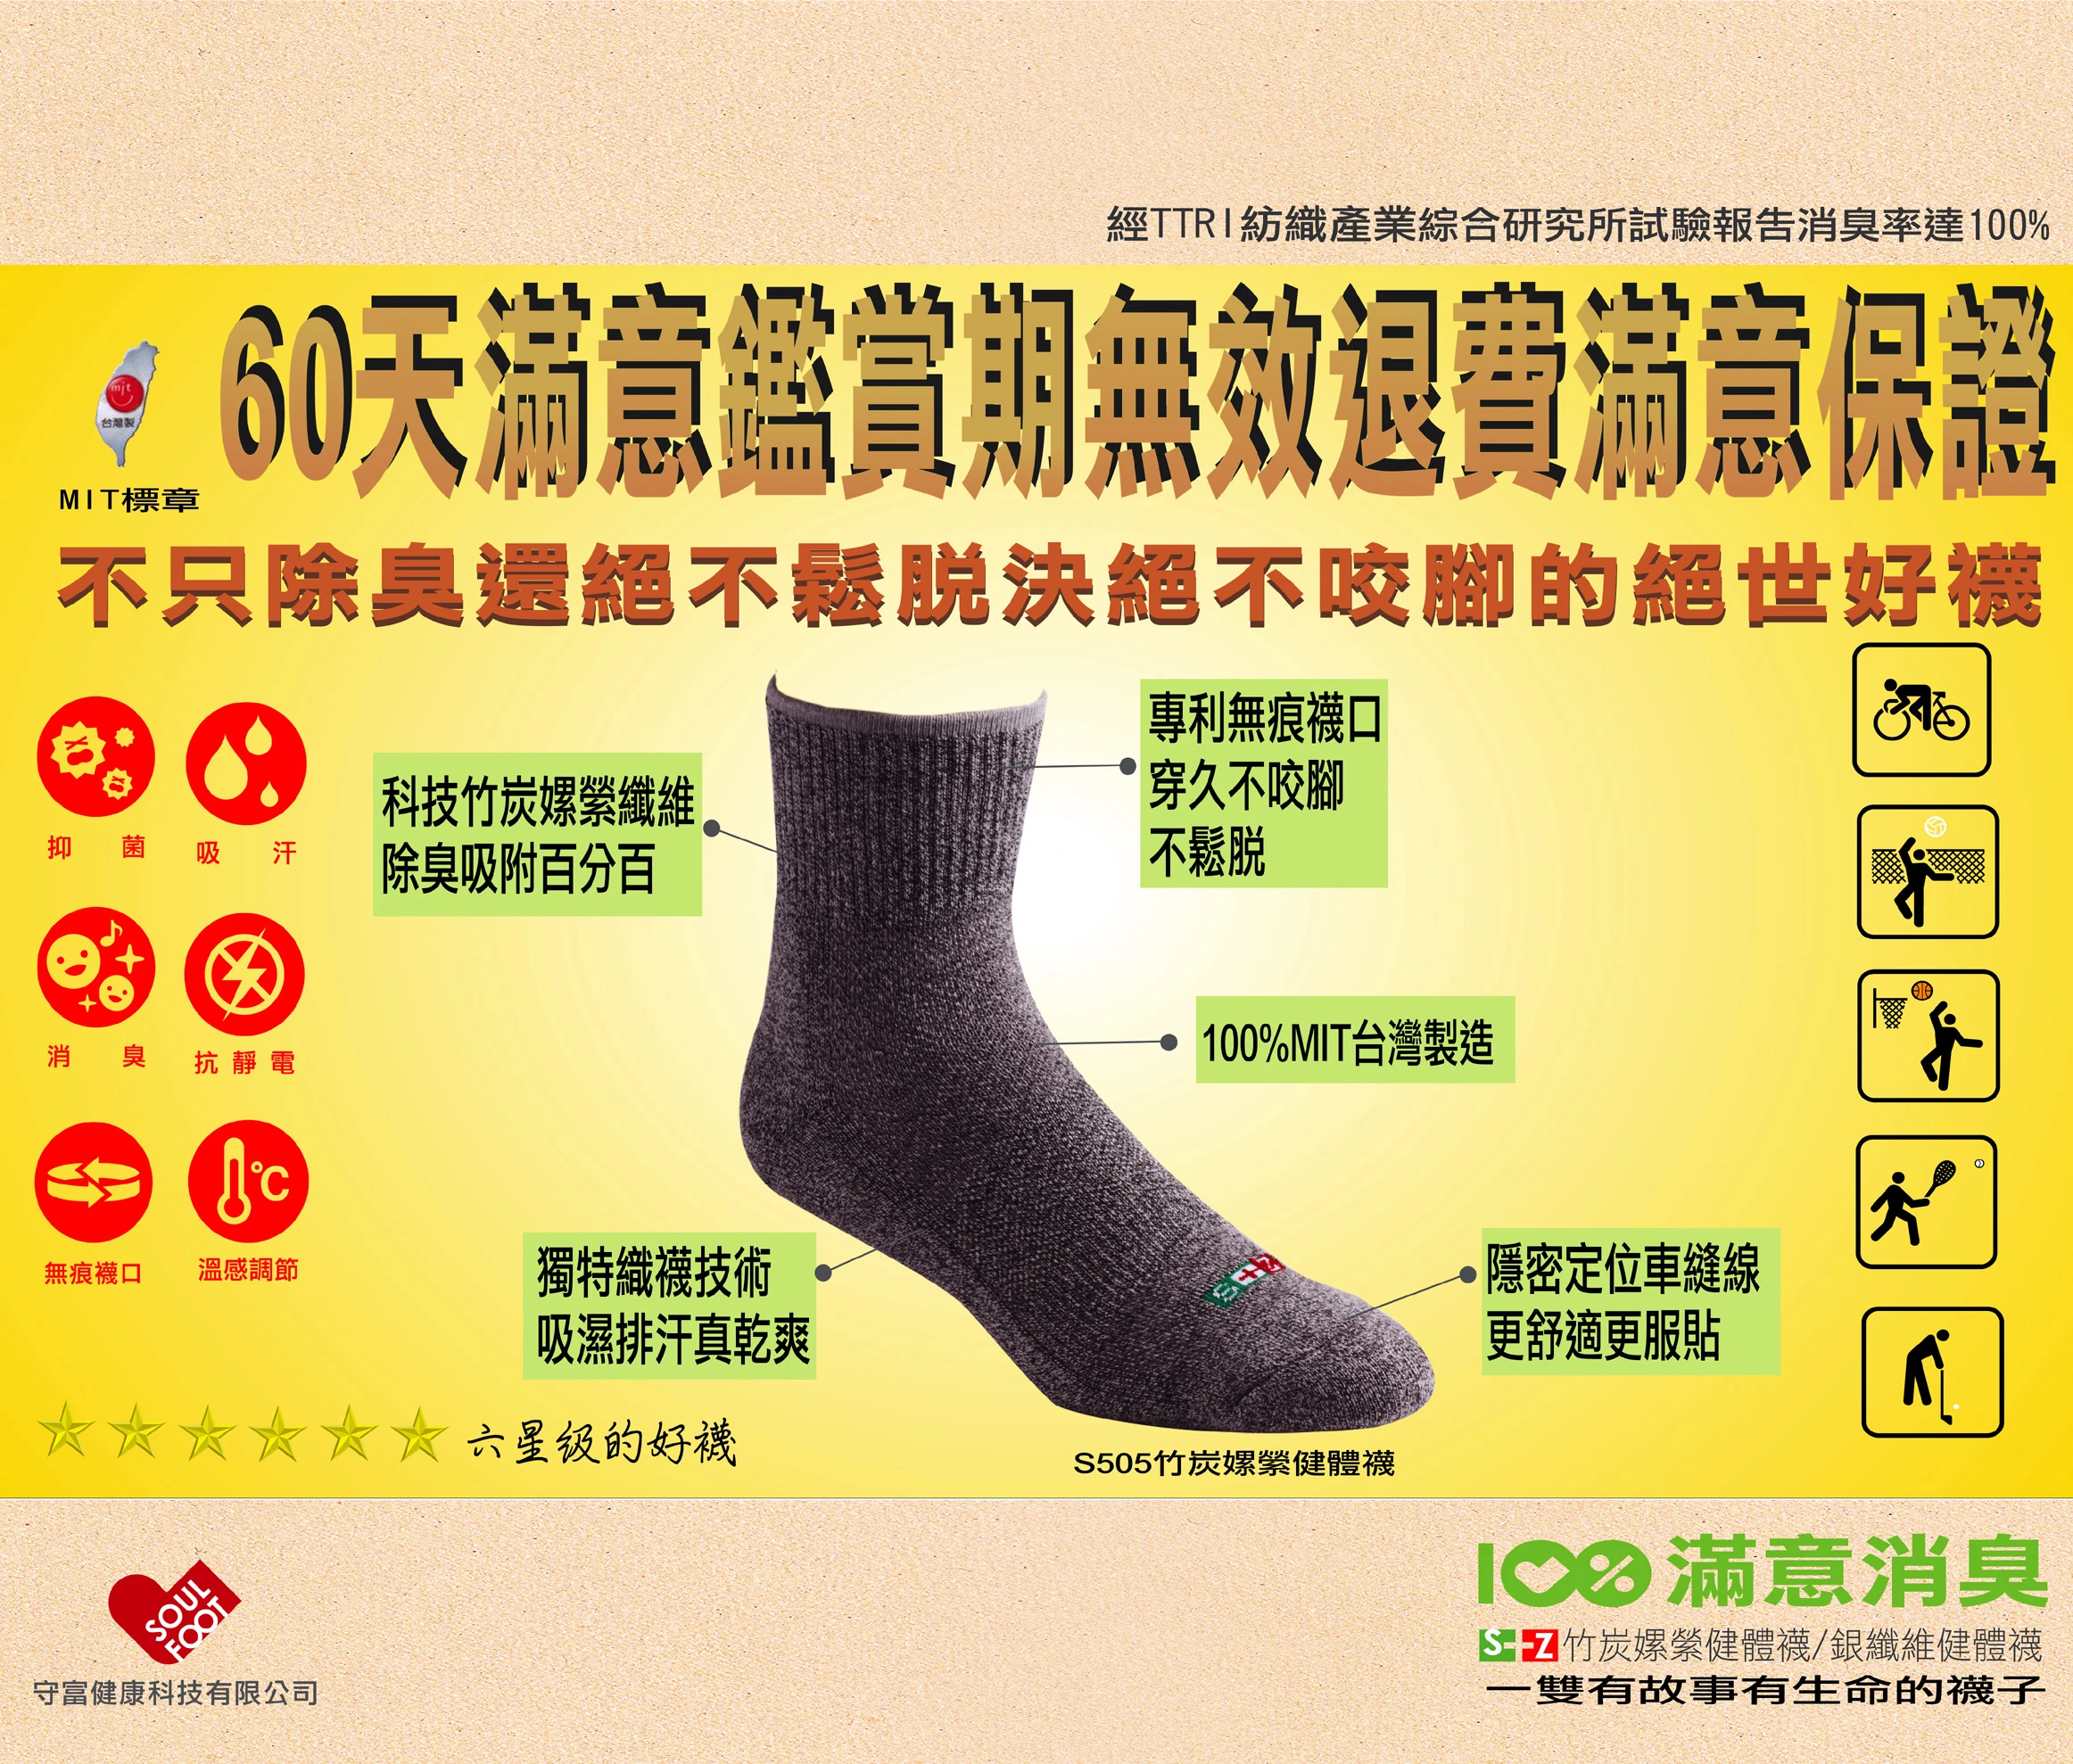 專營各種襪子生產製造批發,OEM,ODM,設櫃經銷